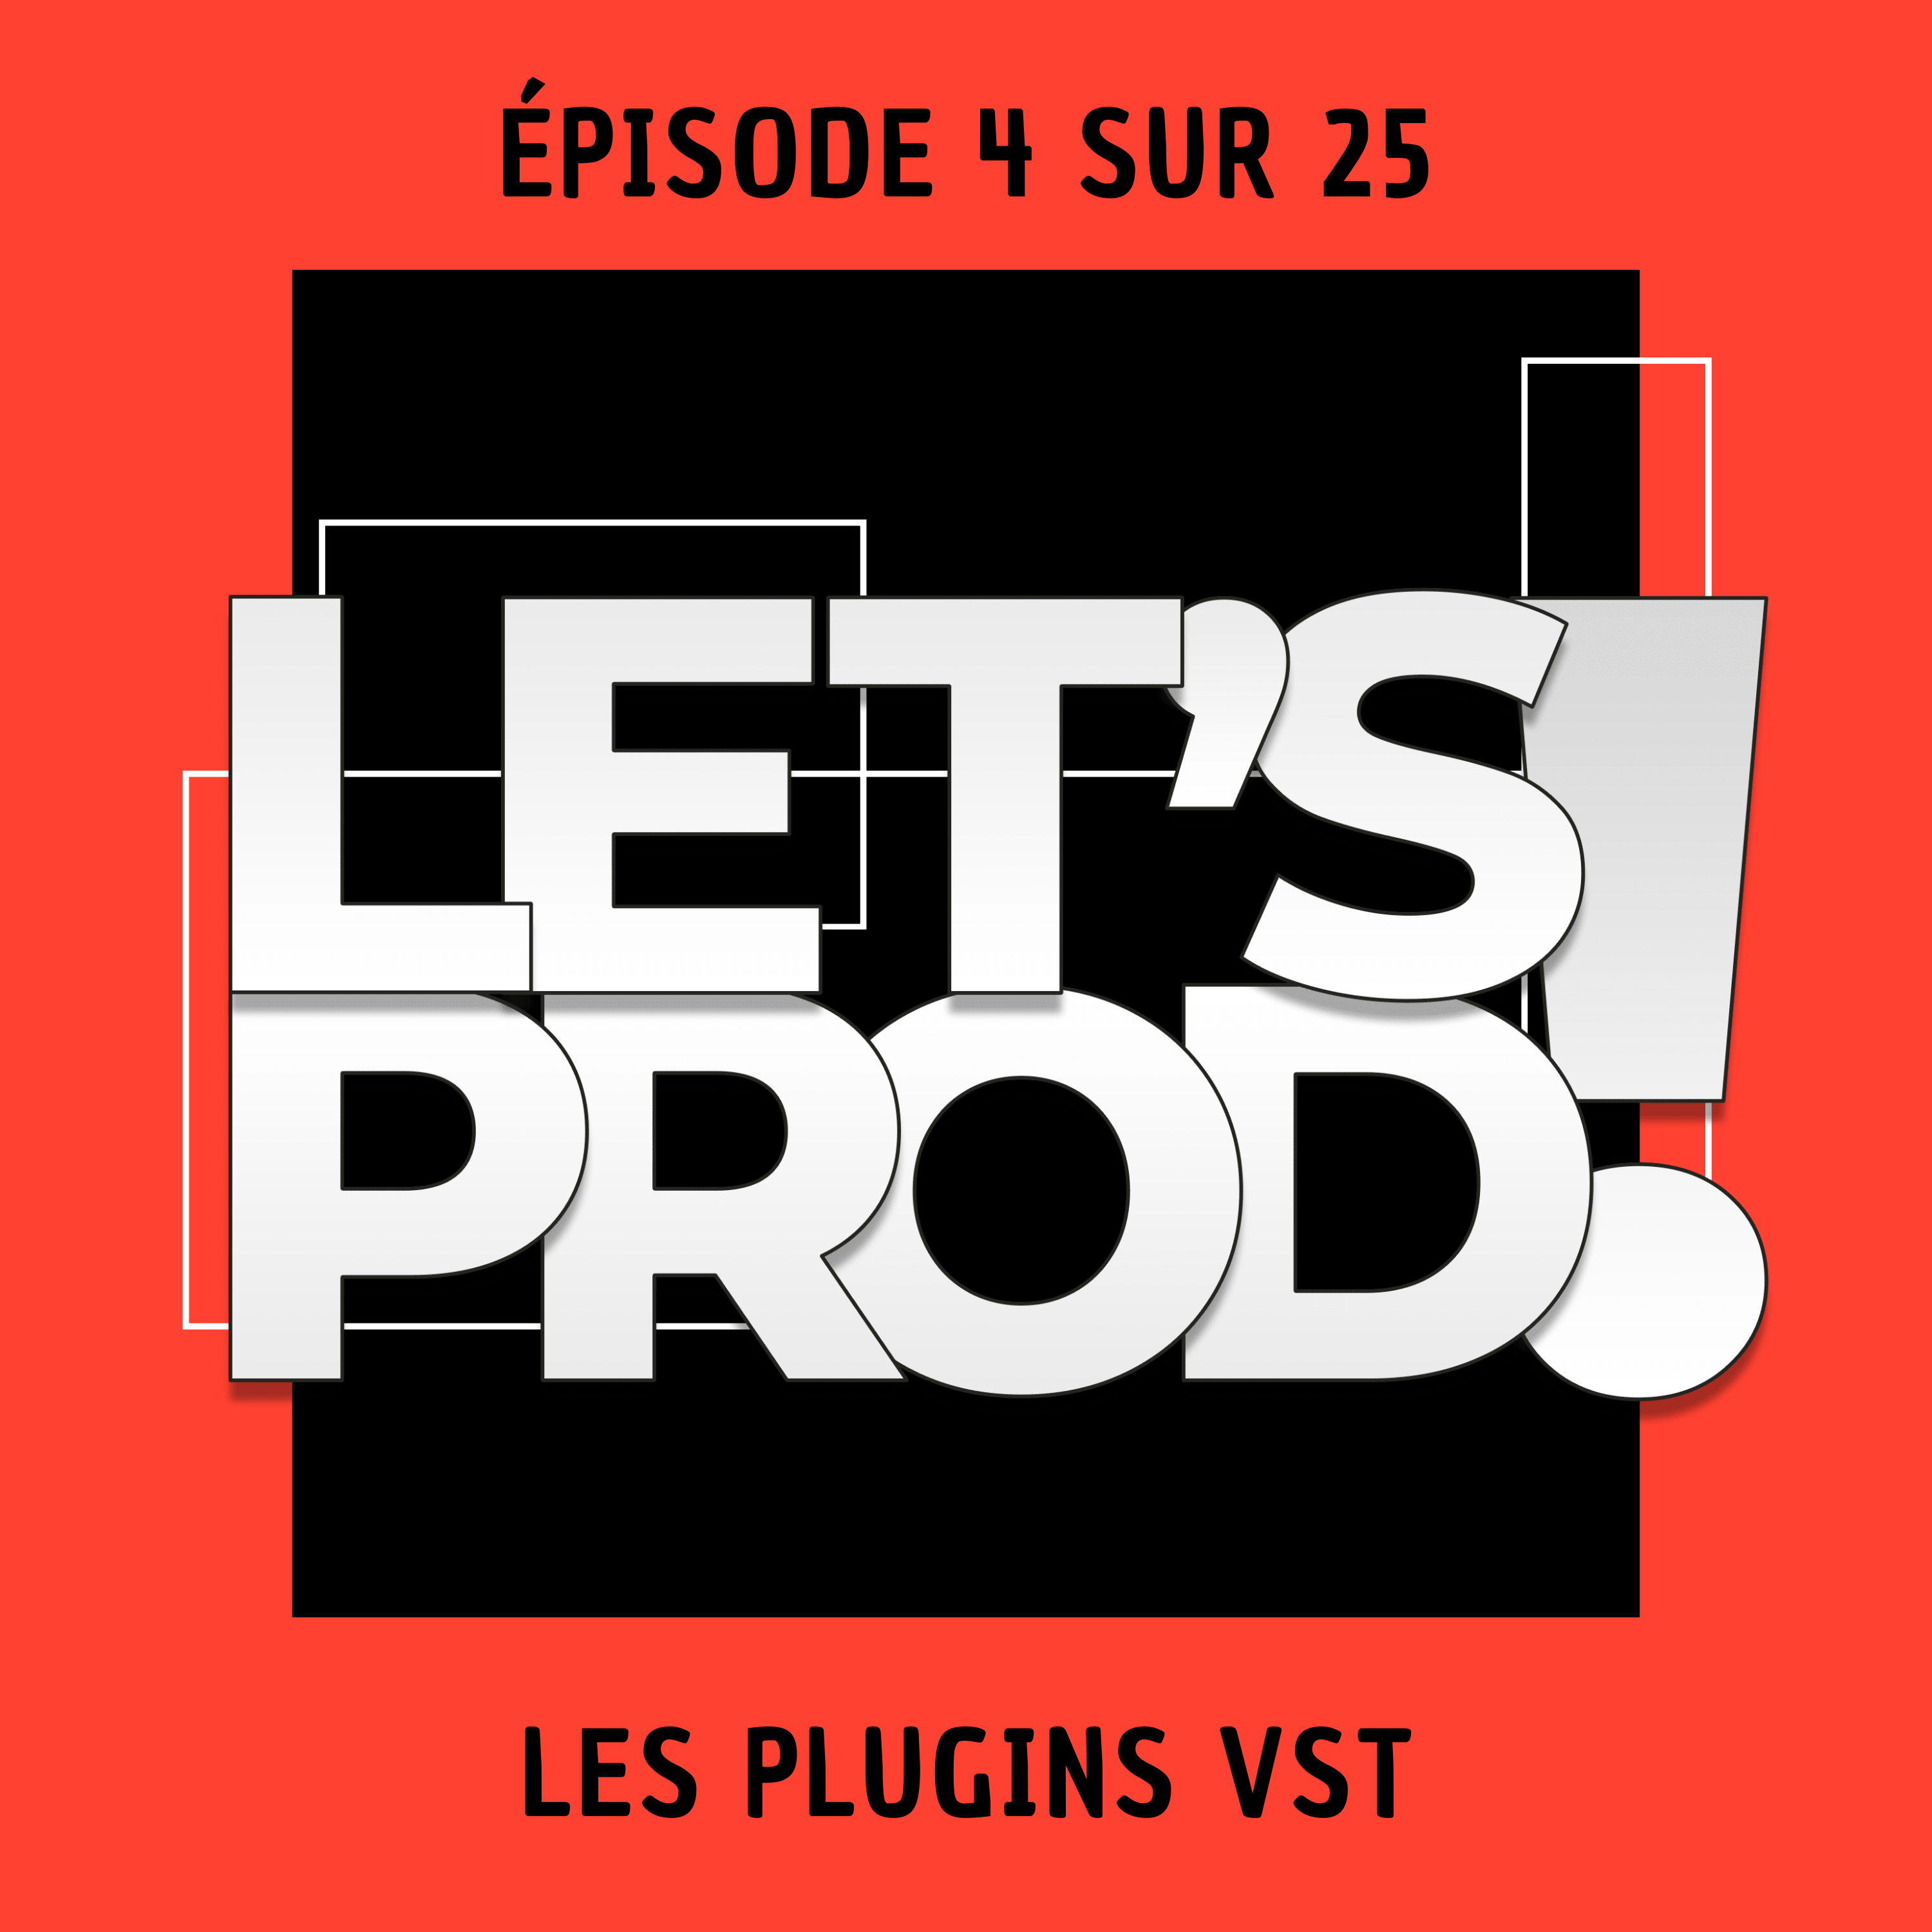 Les plugins VST (Épisode 4 sur 25)